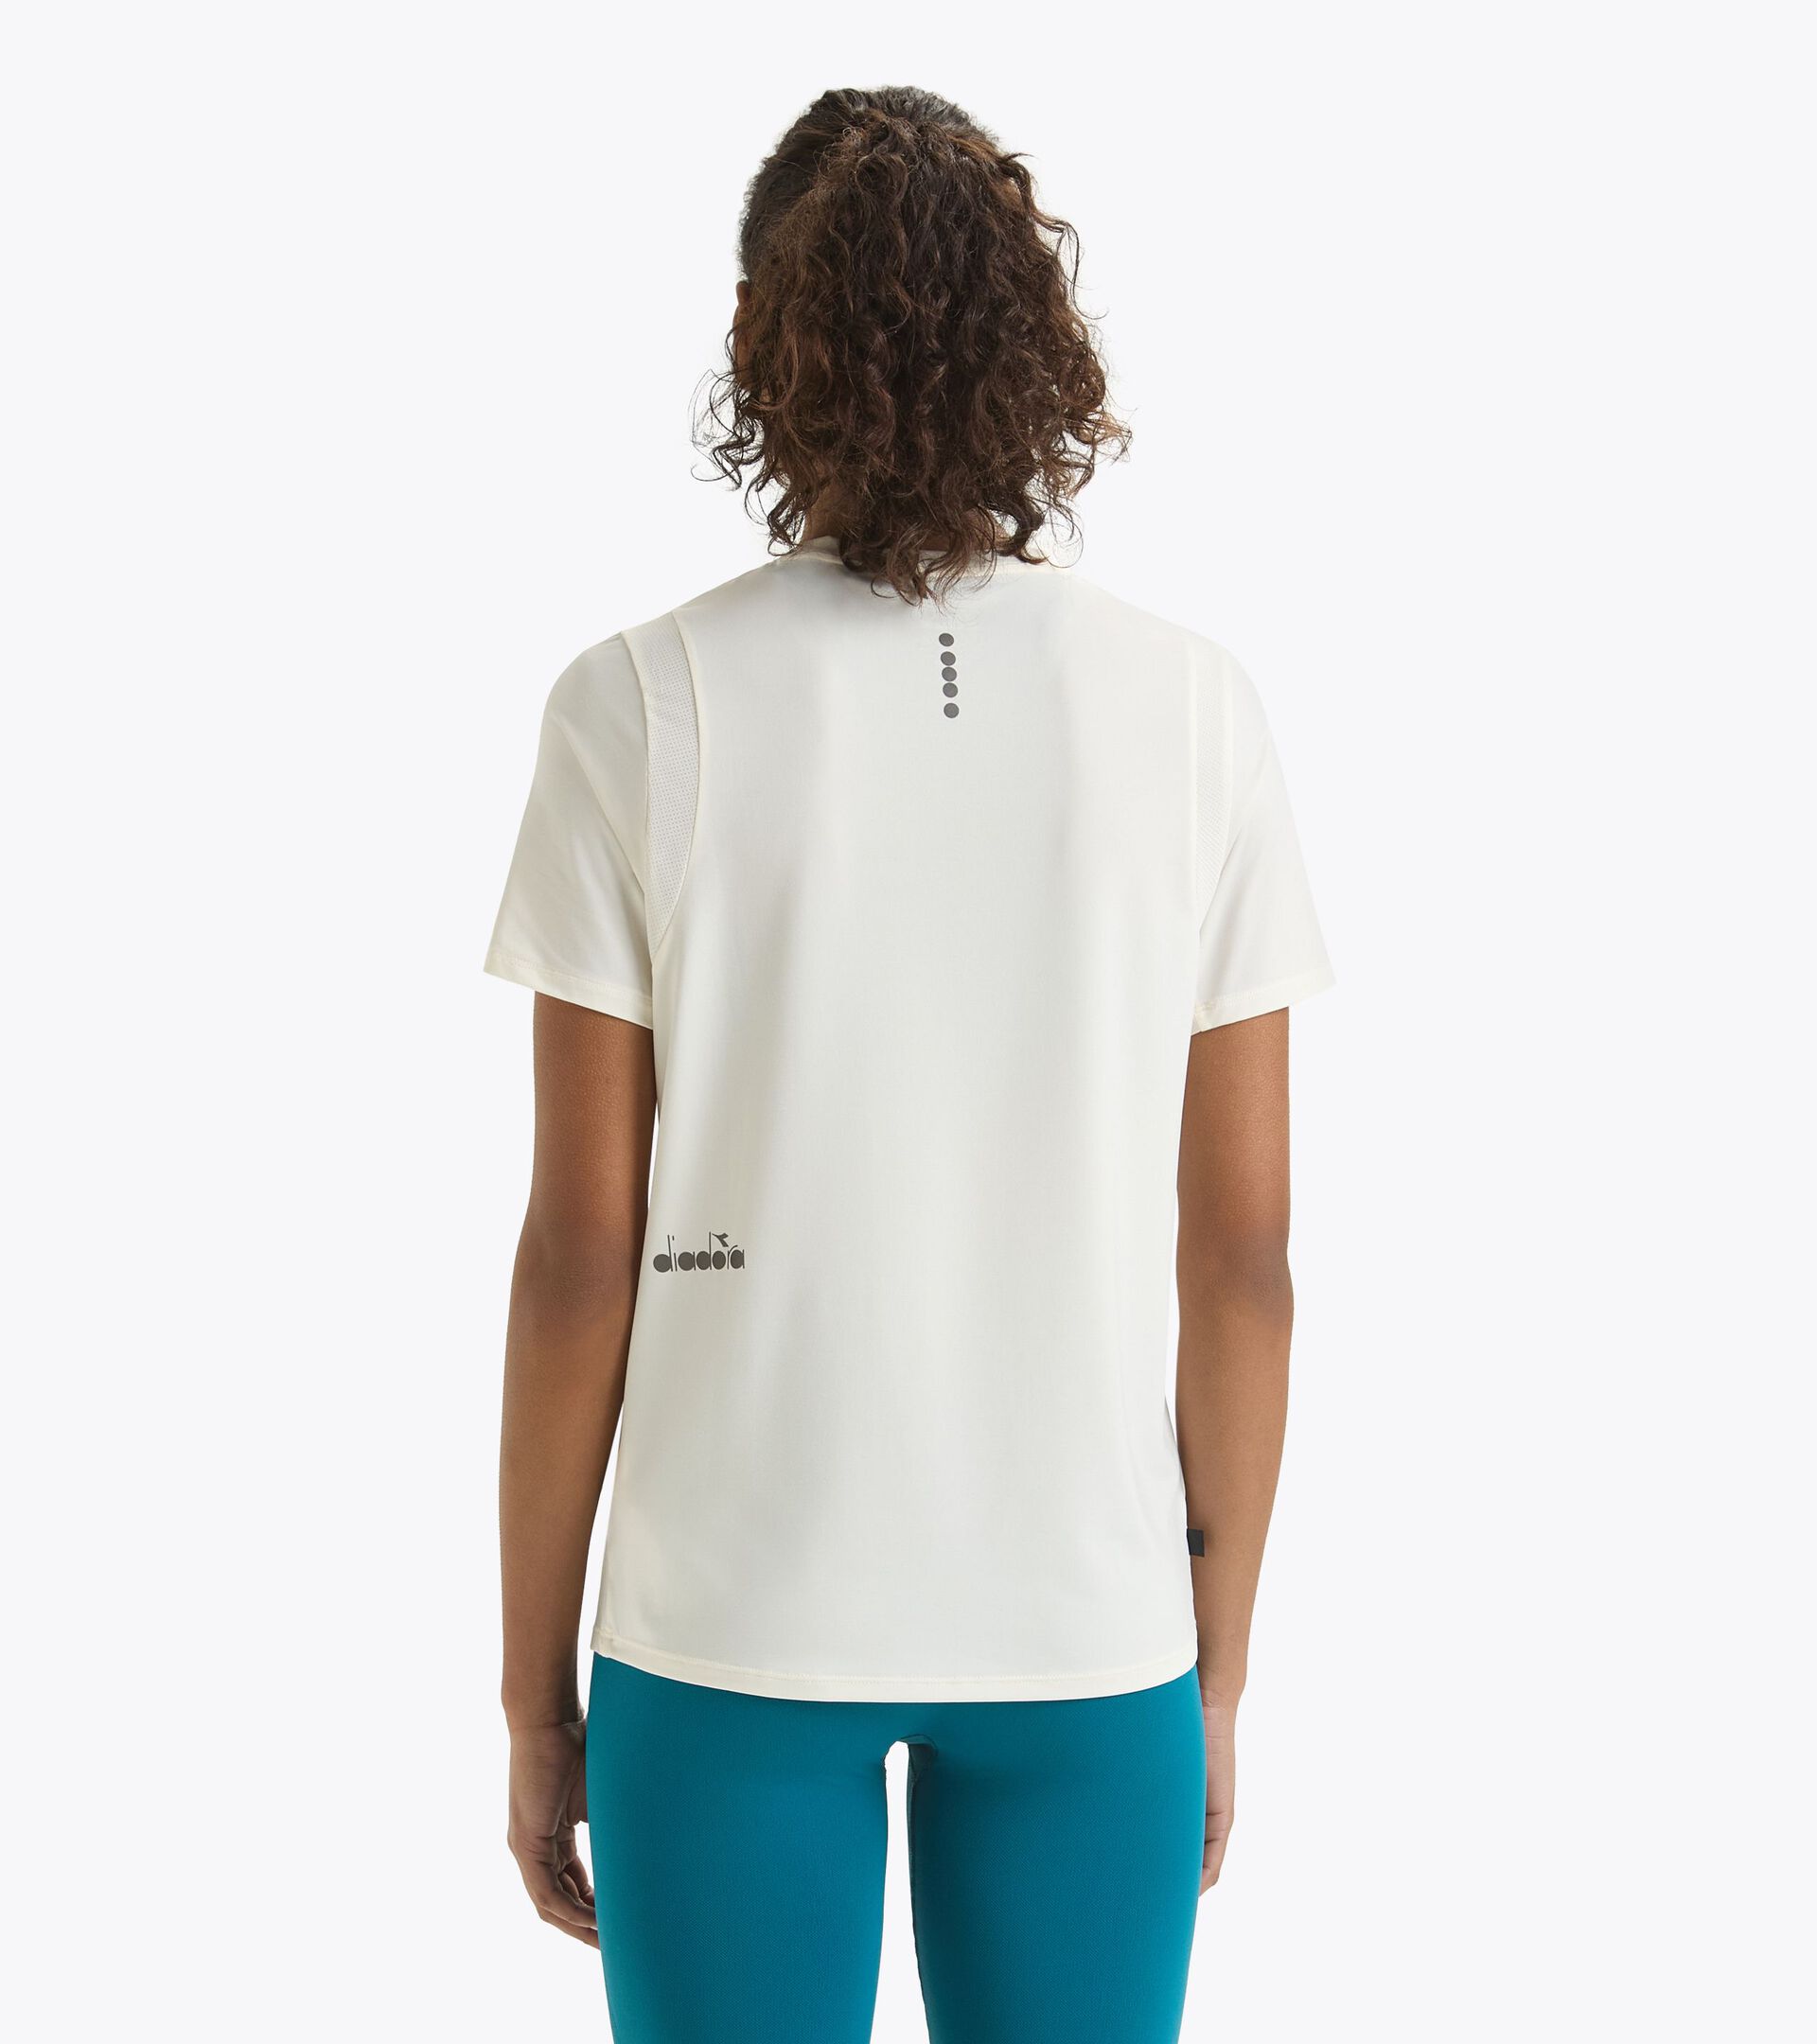 Camiseta de running - Mujer L. SS T-SHIRT TECH RUN CREW BLANCO MURMURAR - Diadora